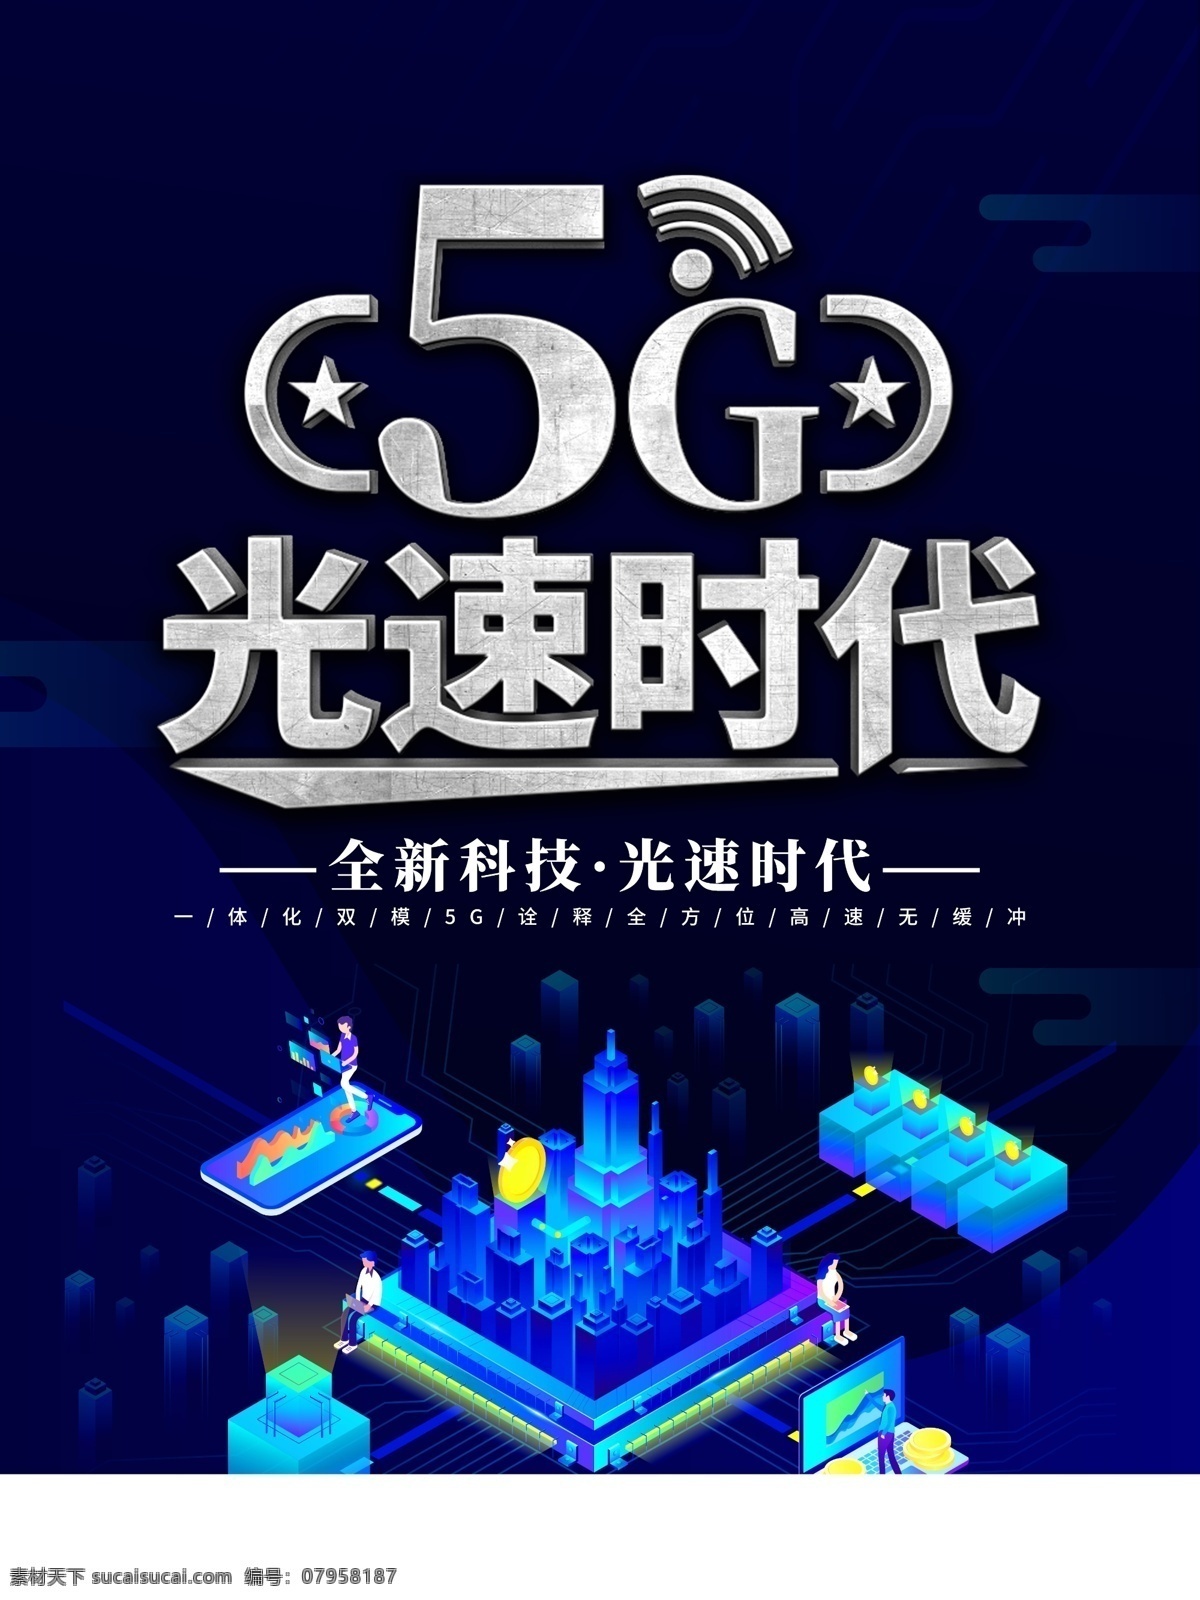 5g时代 5g 5g海报 5g广告 5g卡 5g流量 5g网络 中国芯 芯片 5g来了 联通5g 移动5g 电信5g 5g会议 5g新时代 5g极速通讯 5g来啦 设